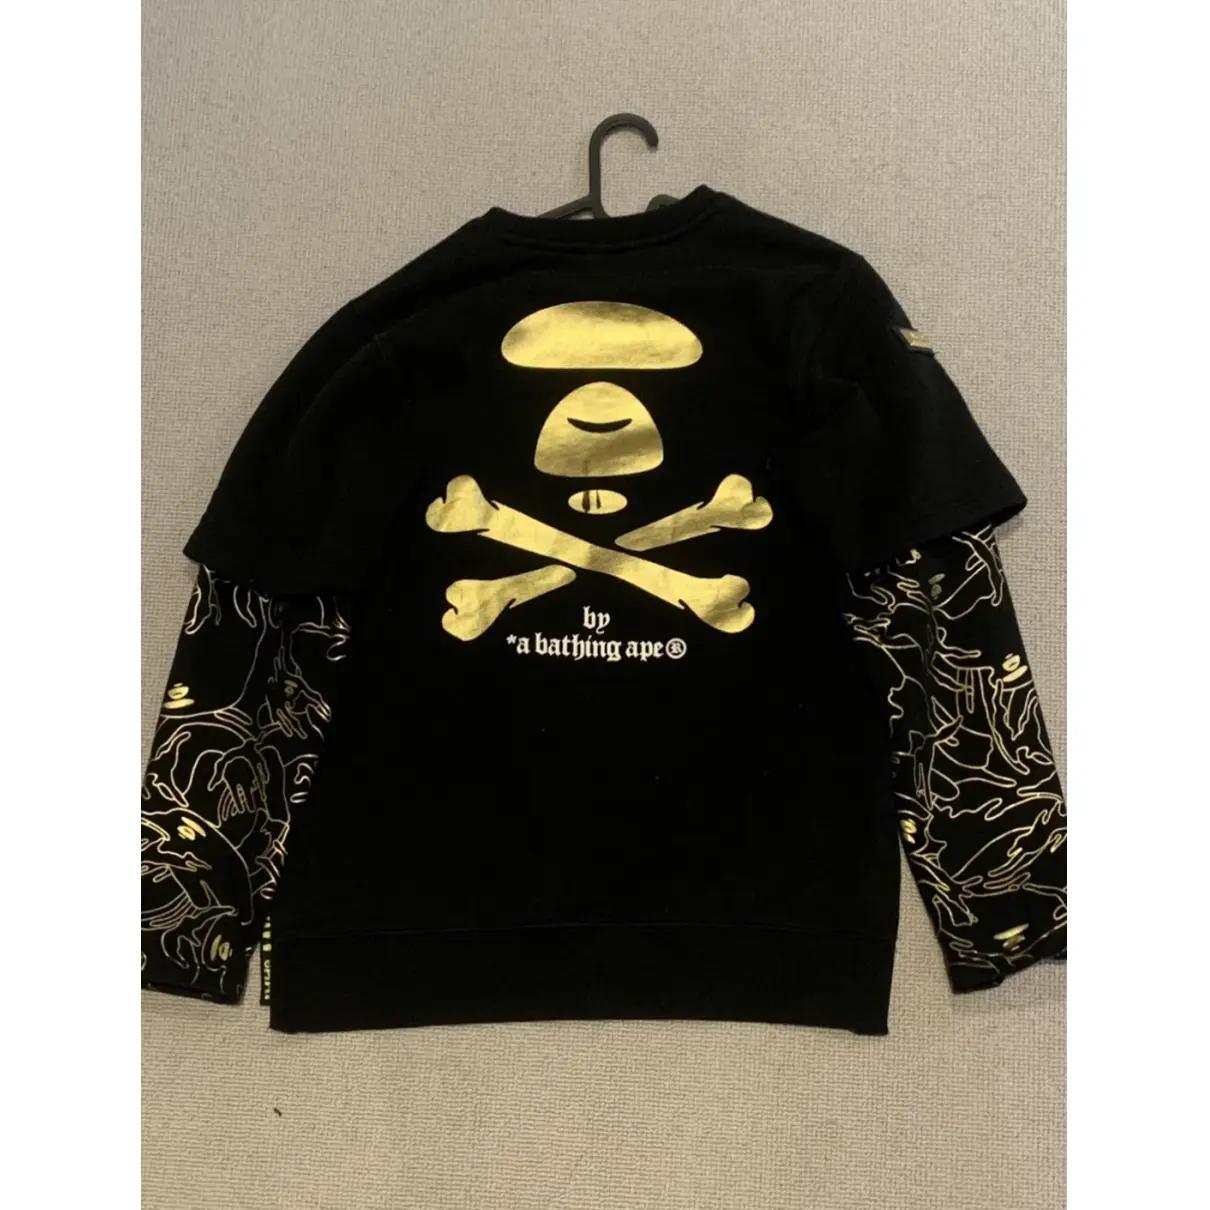 Buy A Bathing Ape Black Cotton Knitwear & Sweatshirt online